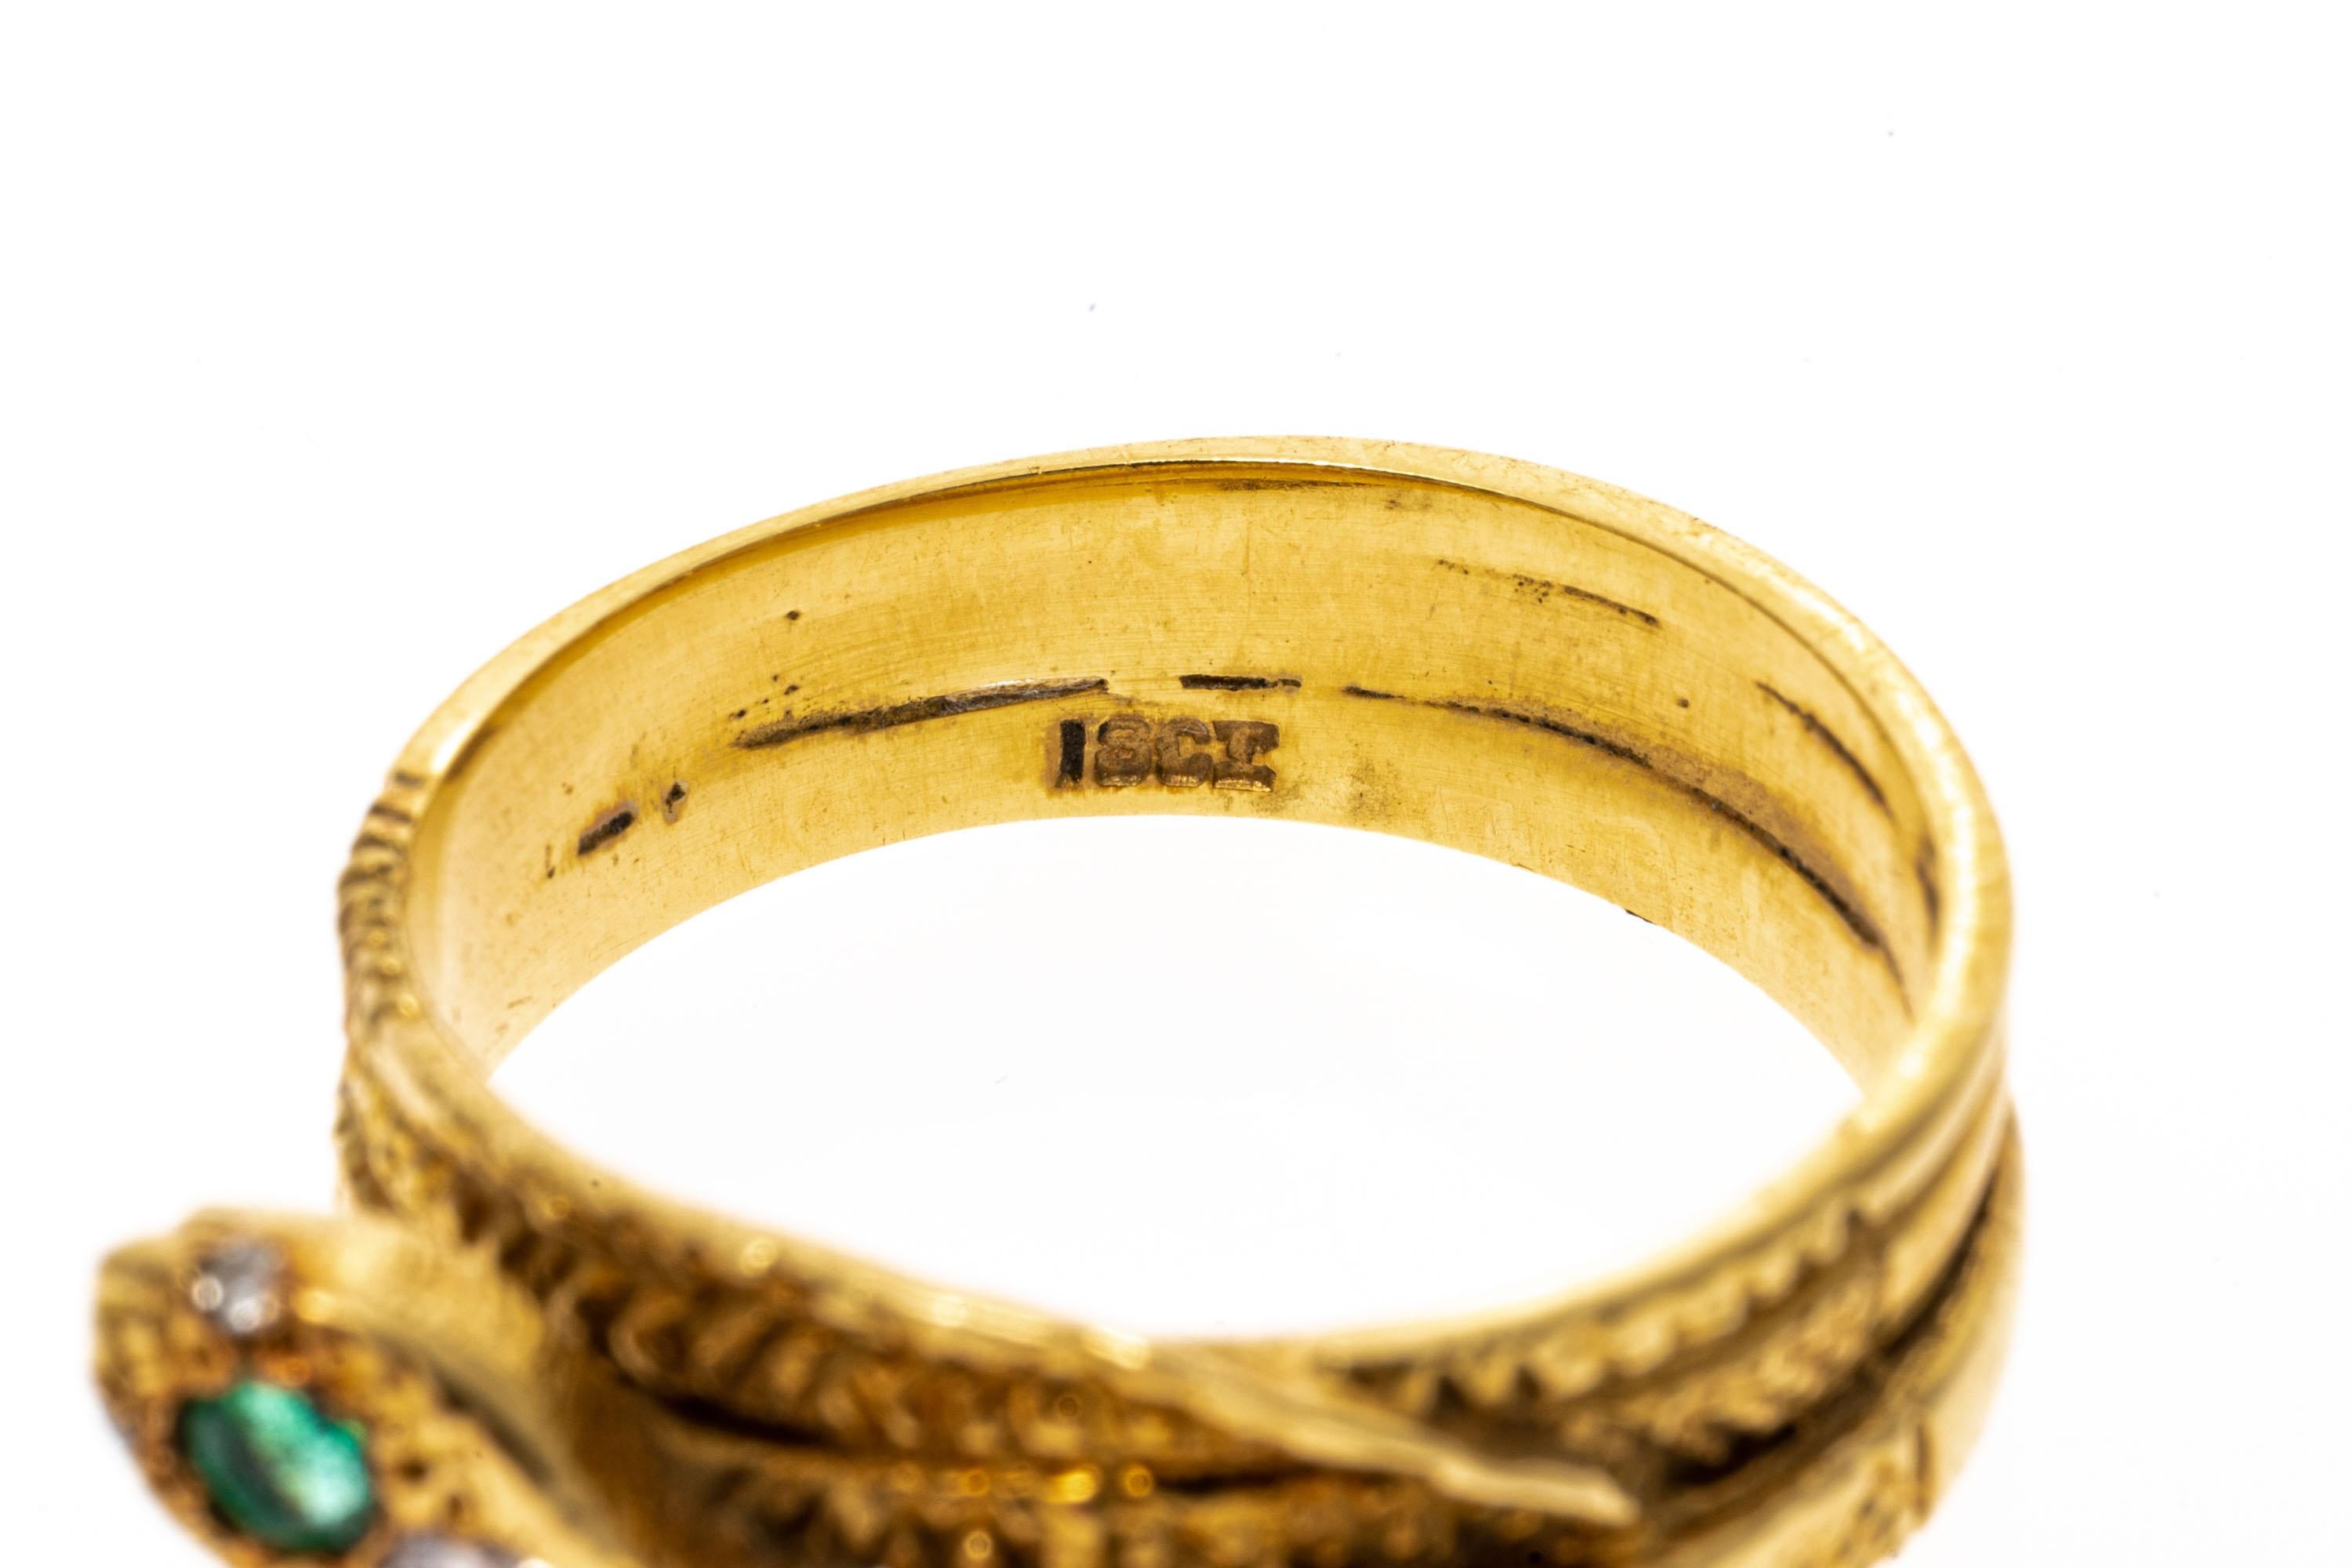 Ring aus 18k Gelbgold. Dieser ungewöhnliche Ring ist ein gewundenes Schlangenmotiv mit einem kreuzschraffierten, gemusterten Körper und einem hochglanzpolierten Schaft, der zu einer dreifachen Windung gewickelt ist und mit einem runden, facettierten